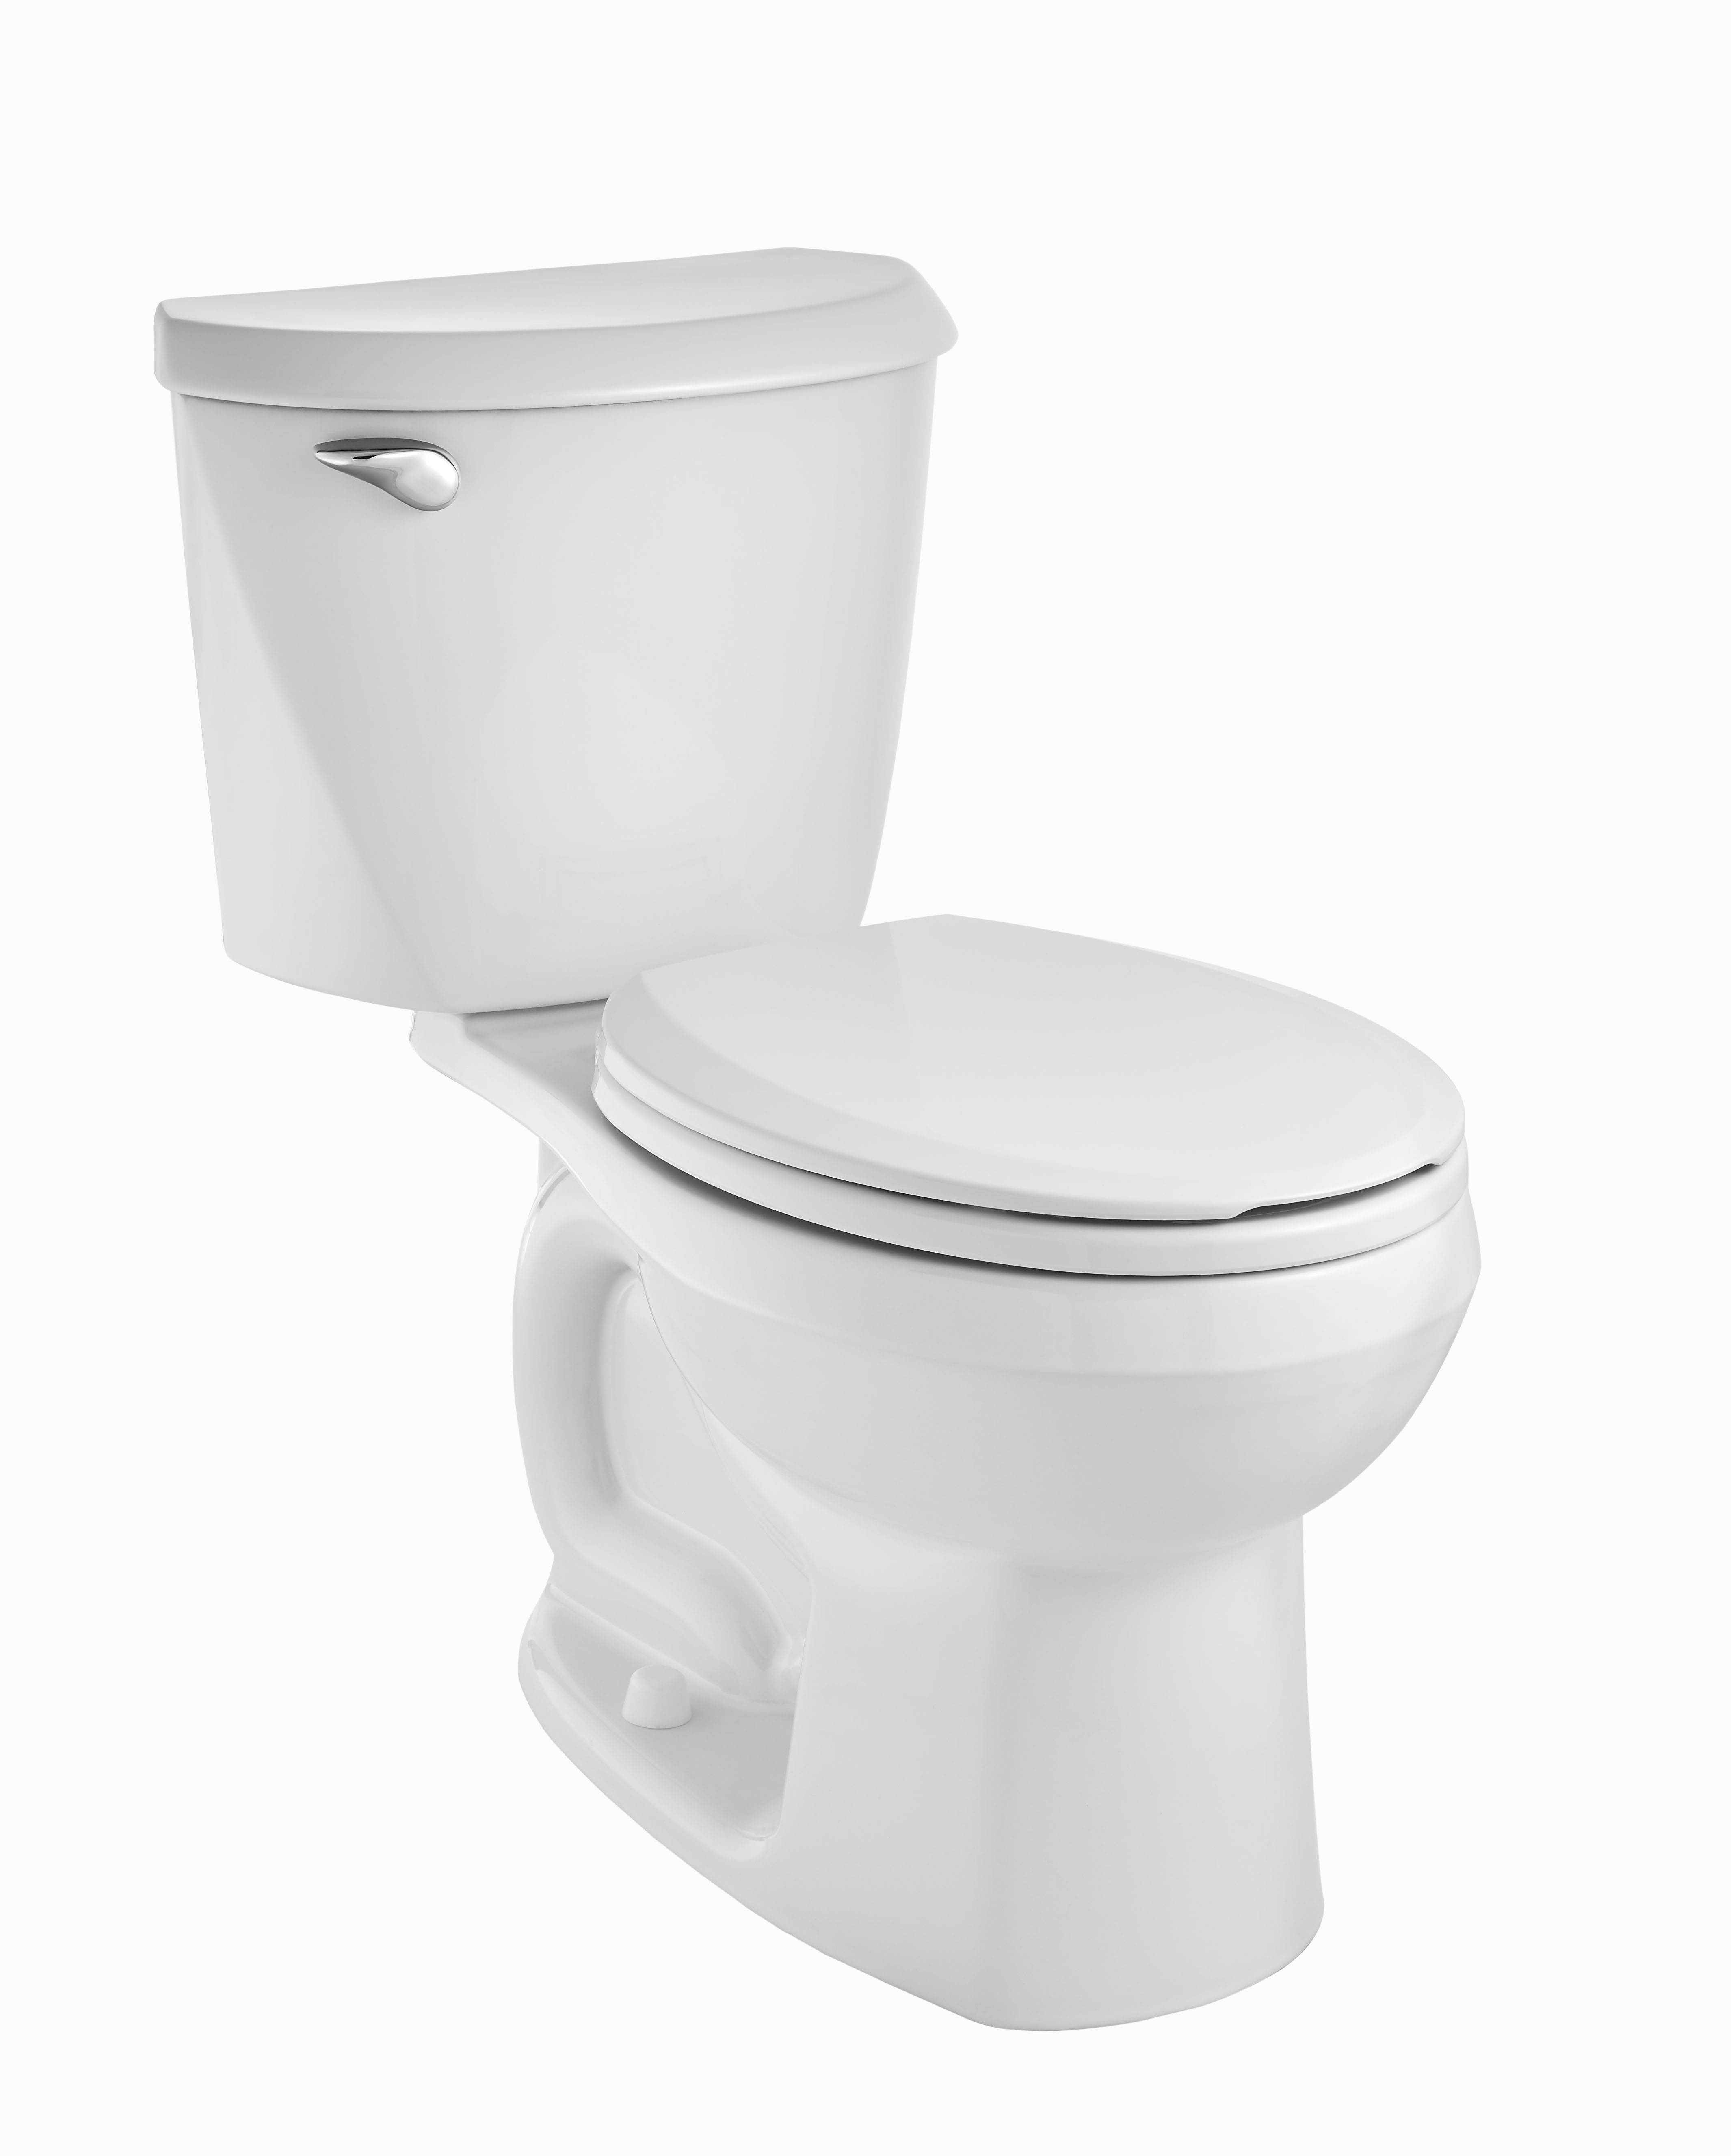 Toilette Reliant complète en deux pièces, 1,28 gpc/4,8 Lpc, hauteur régulière, devant rond, avec siège